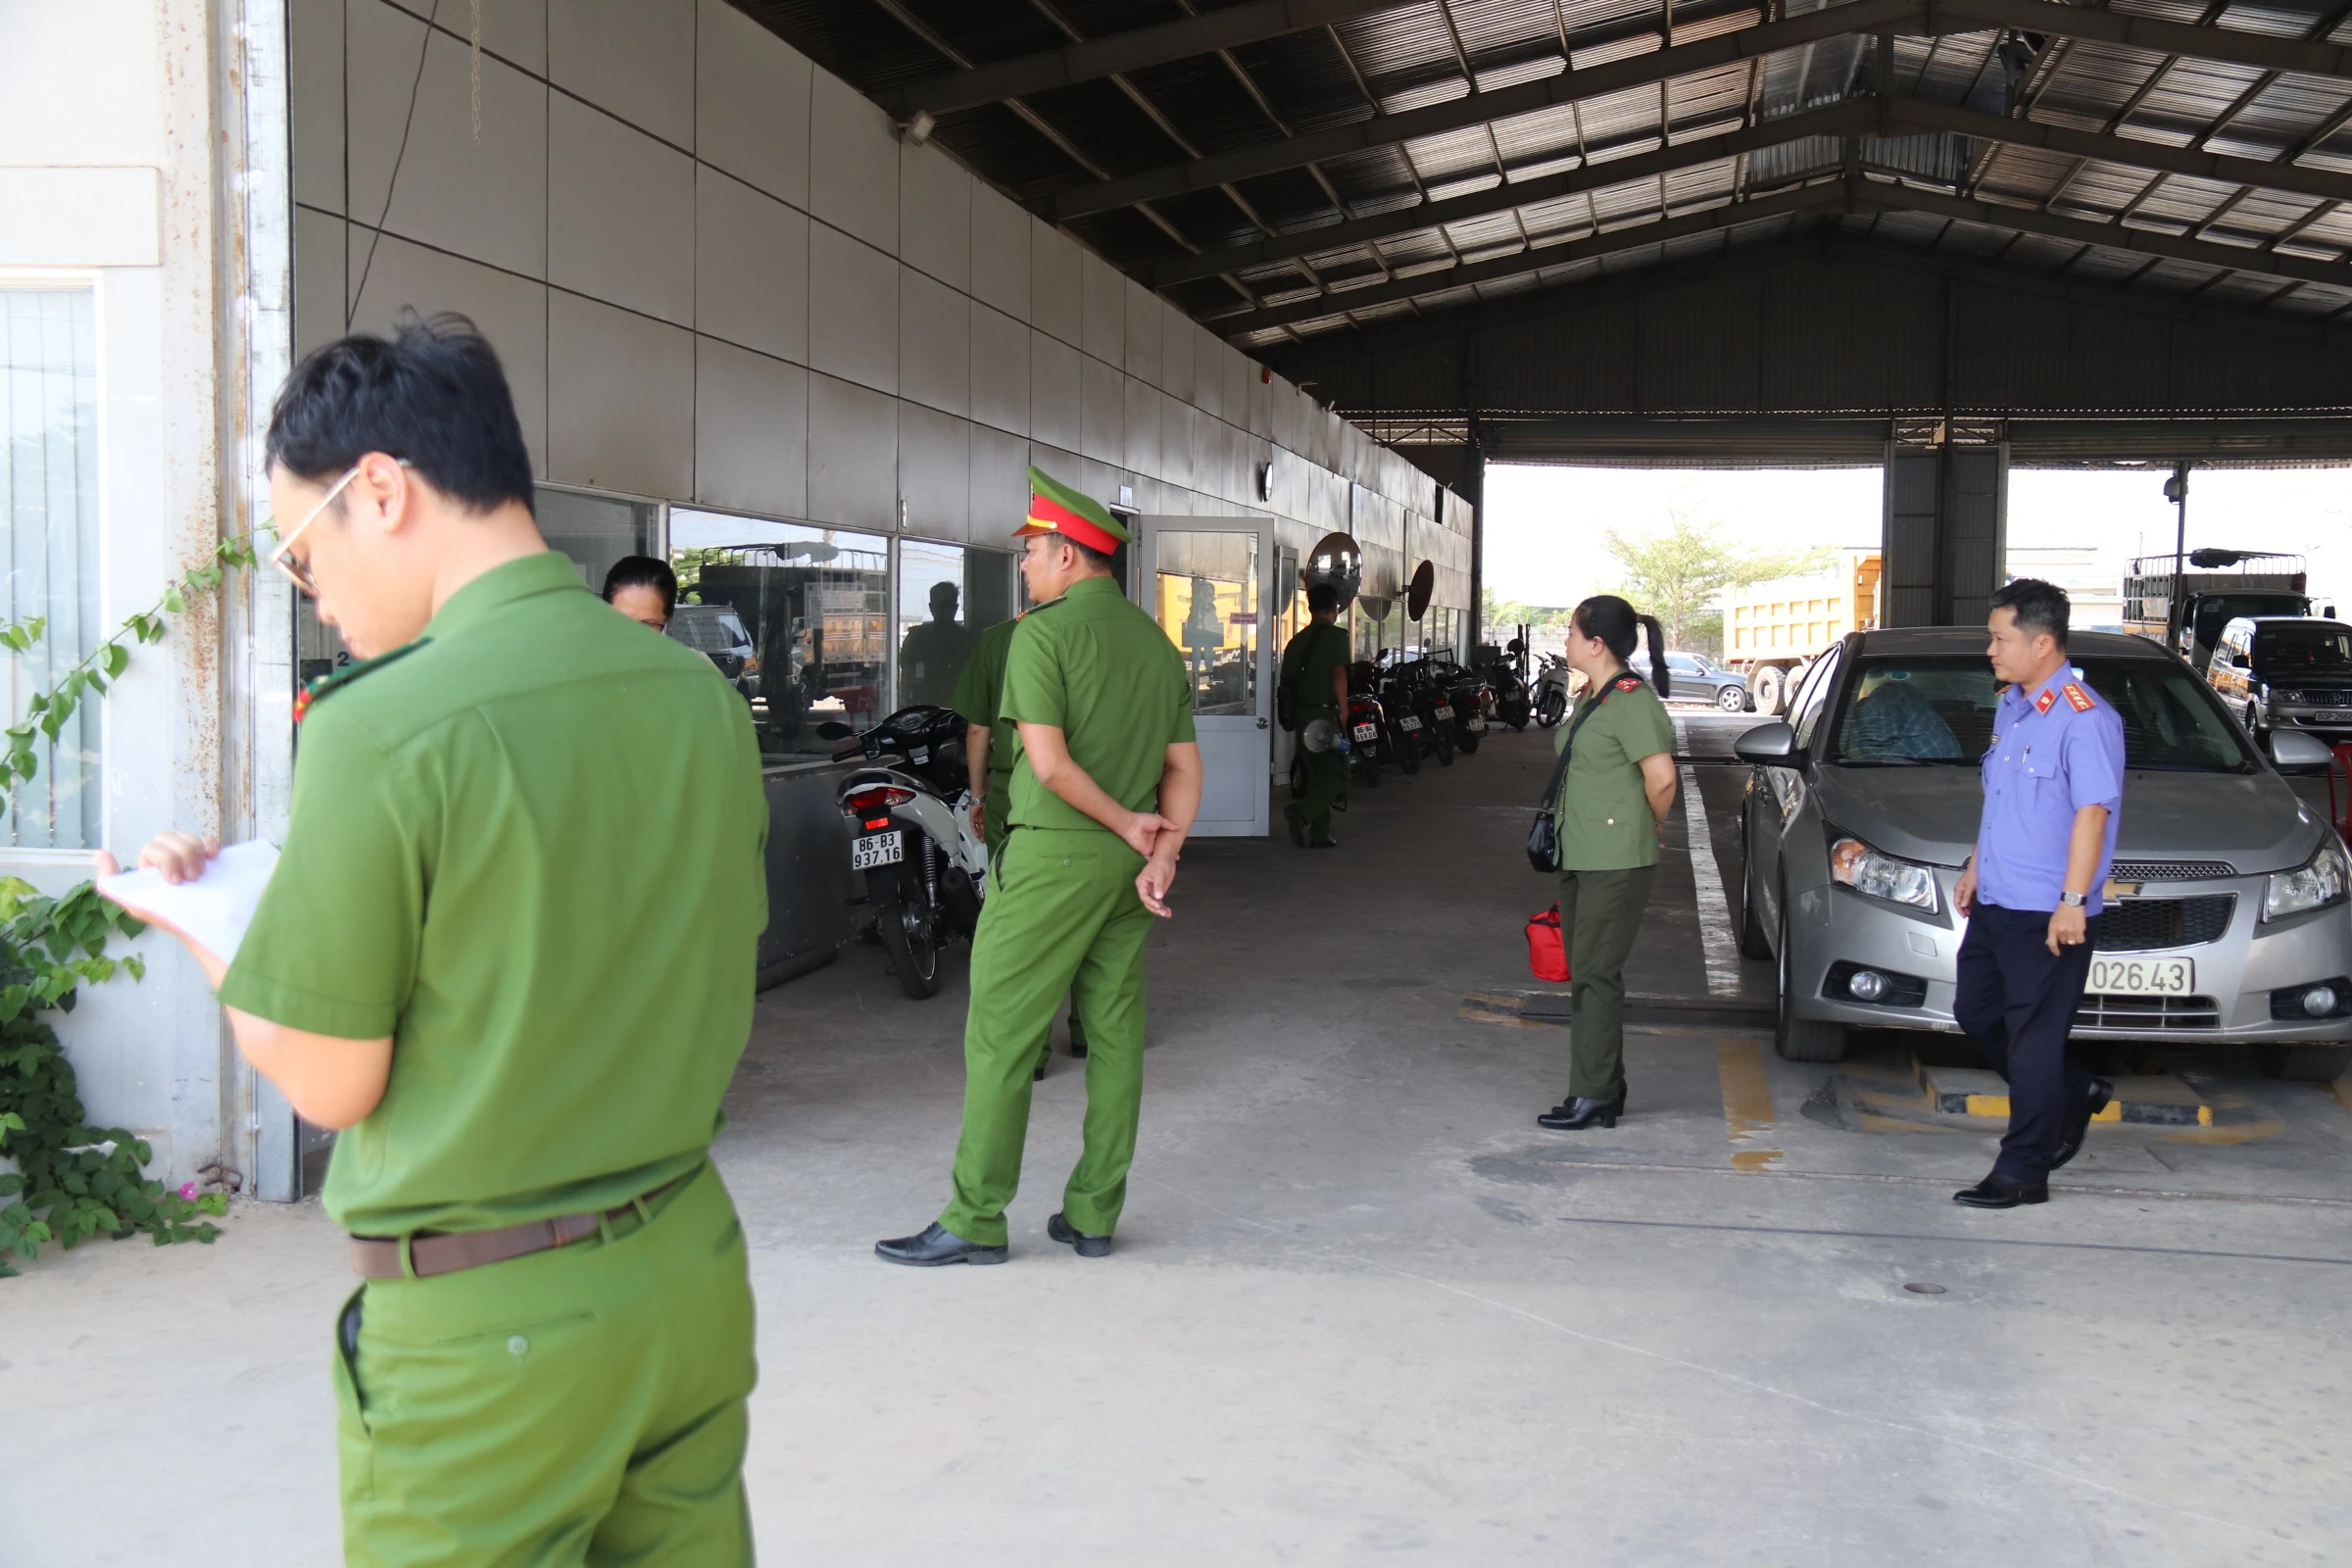 Sai phạm gì tại Trung tâm đăng kiểm 86-02D Bình Thuận khiến lãnh đạo bị bắt giam?